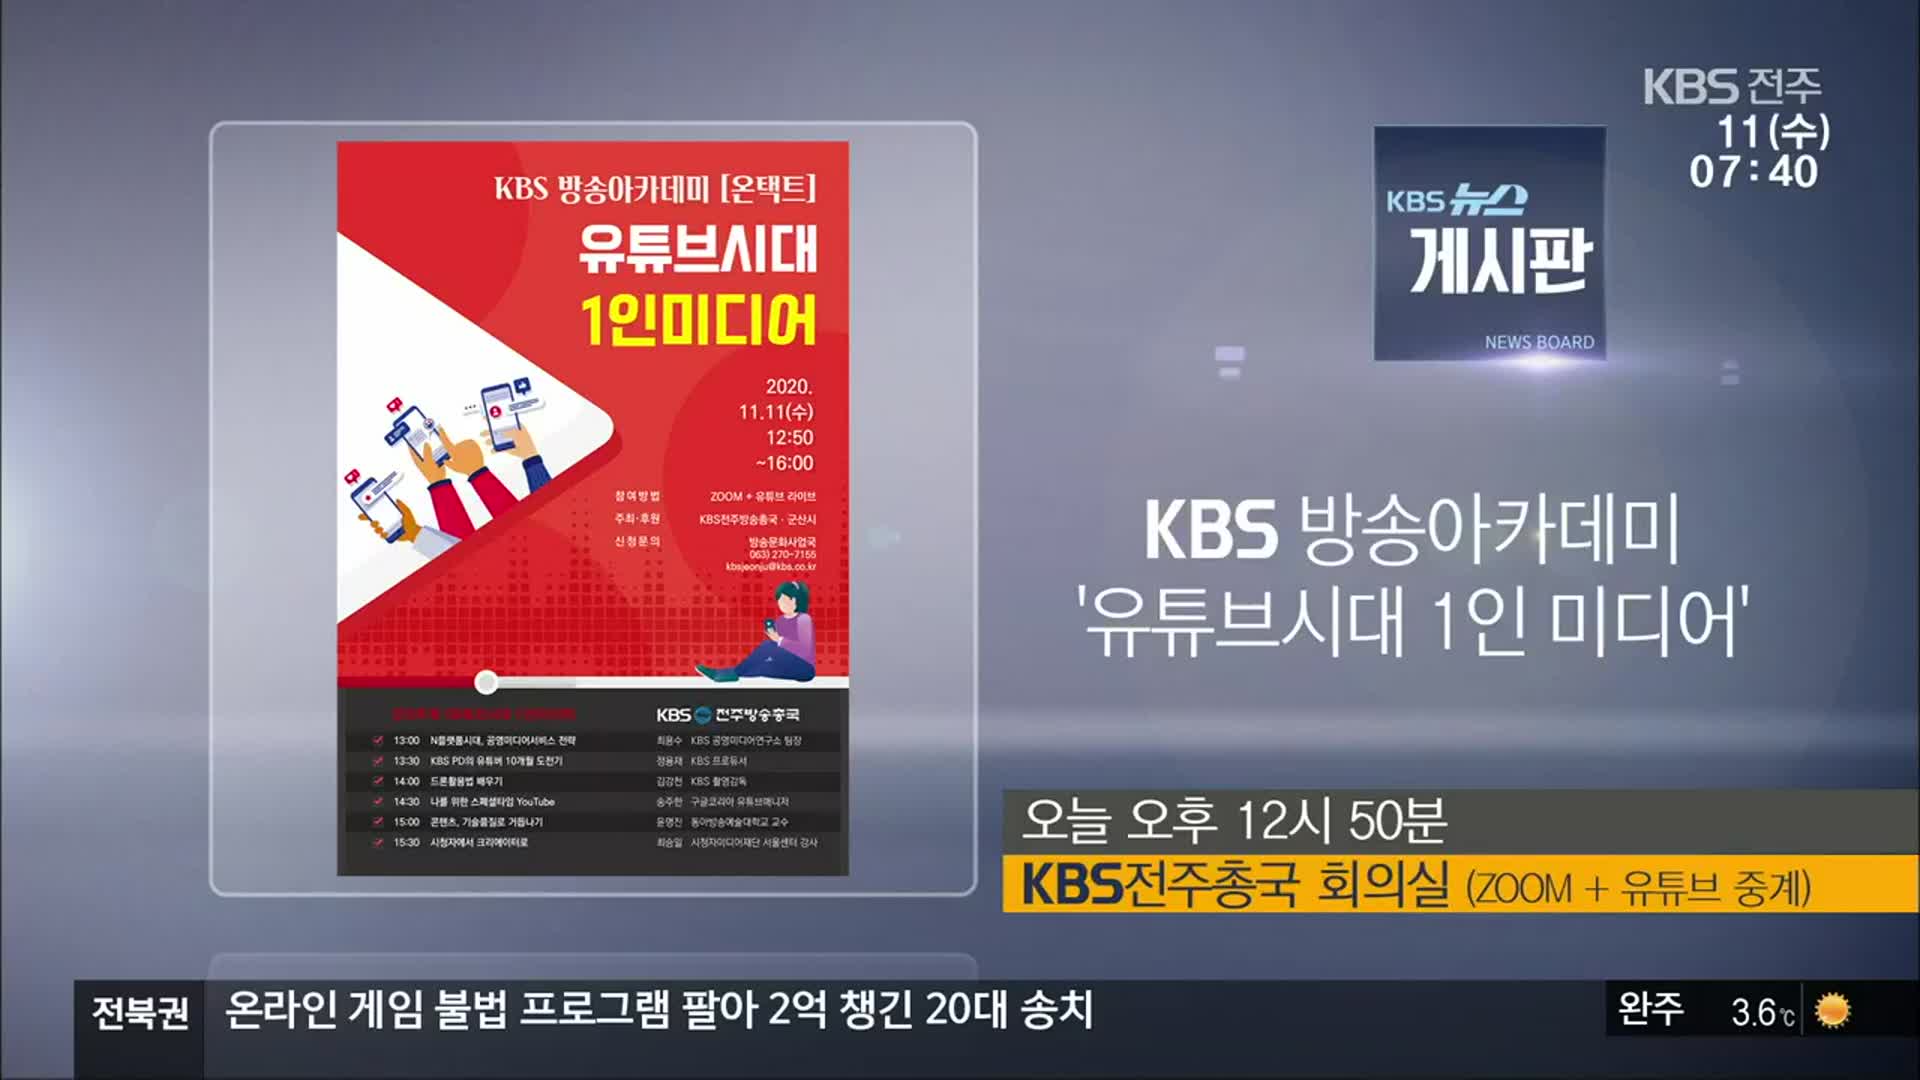 [게시판] KBS 방송아카데미 ‘유튜브시대 1인 미디어’ 외